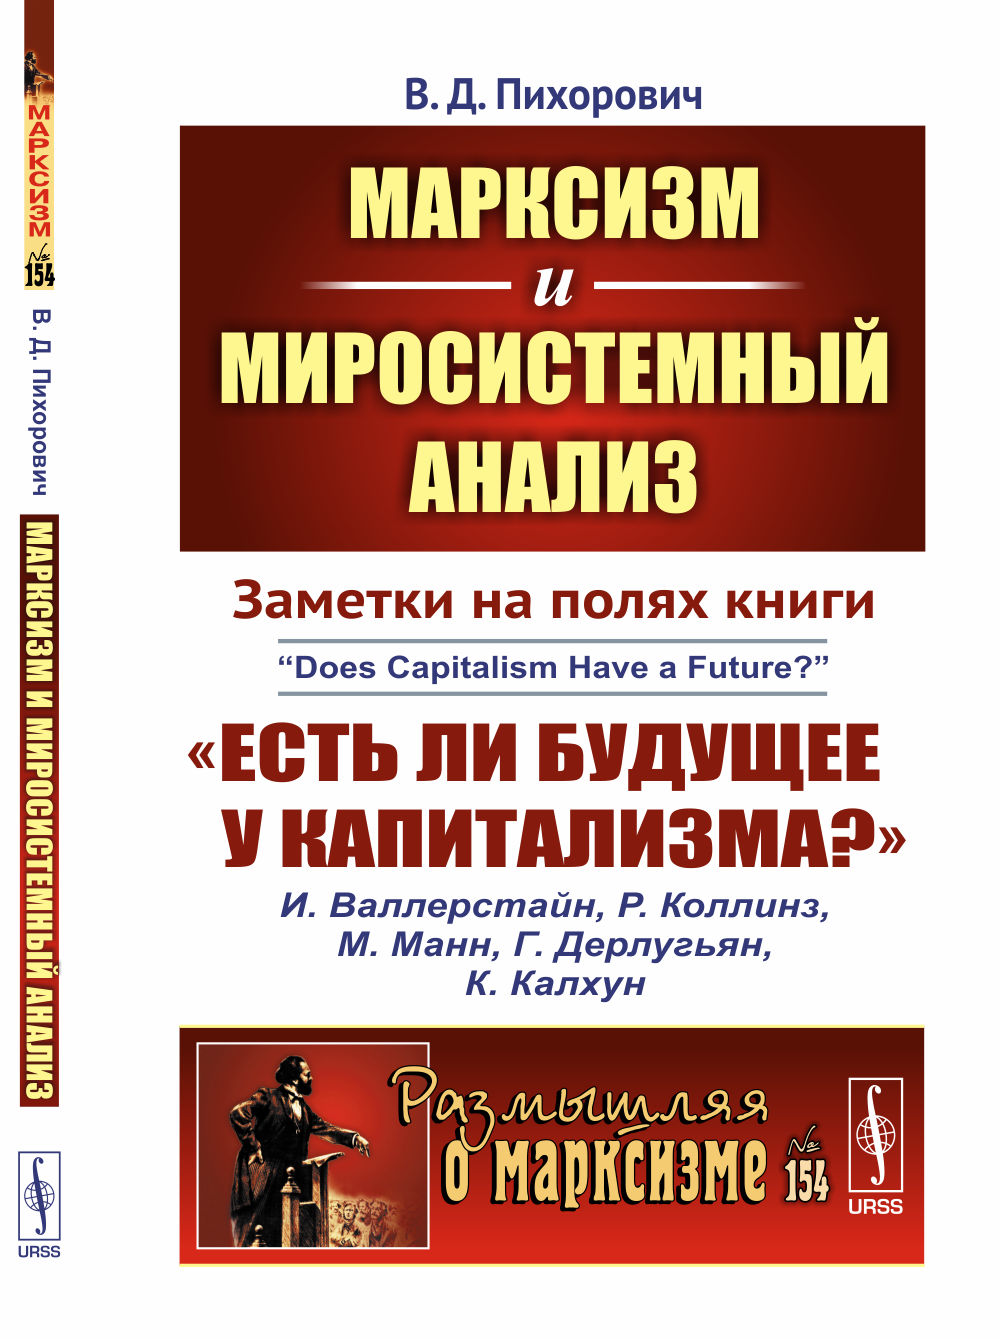 Марксизм и миросистемный анализ: Заметки на полях книги «Есть ли будущее у капитализма?»